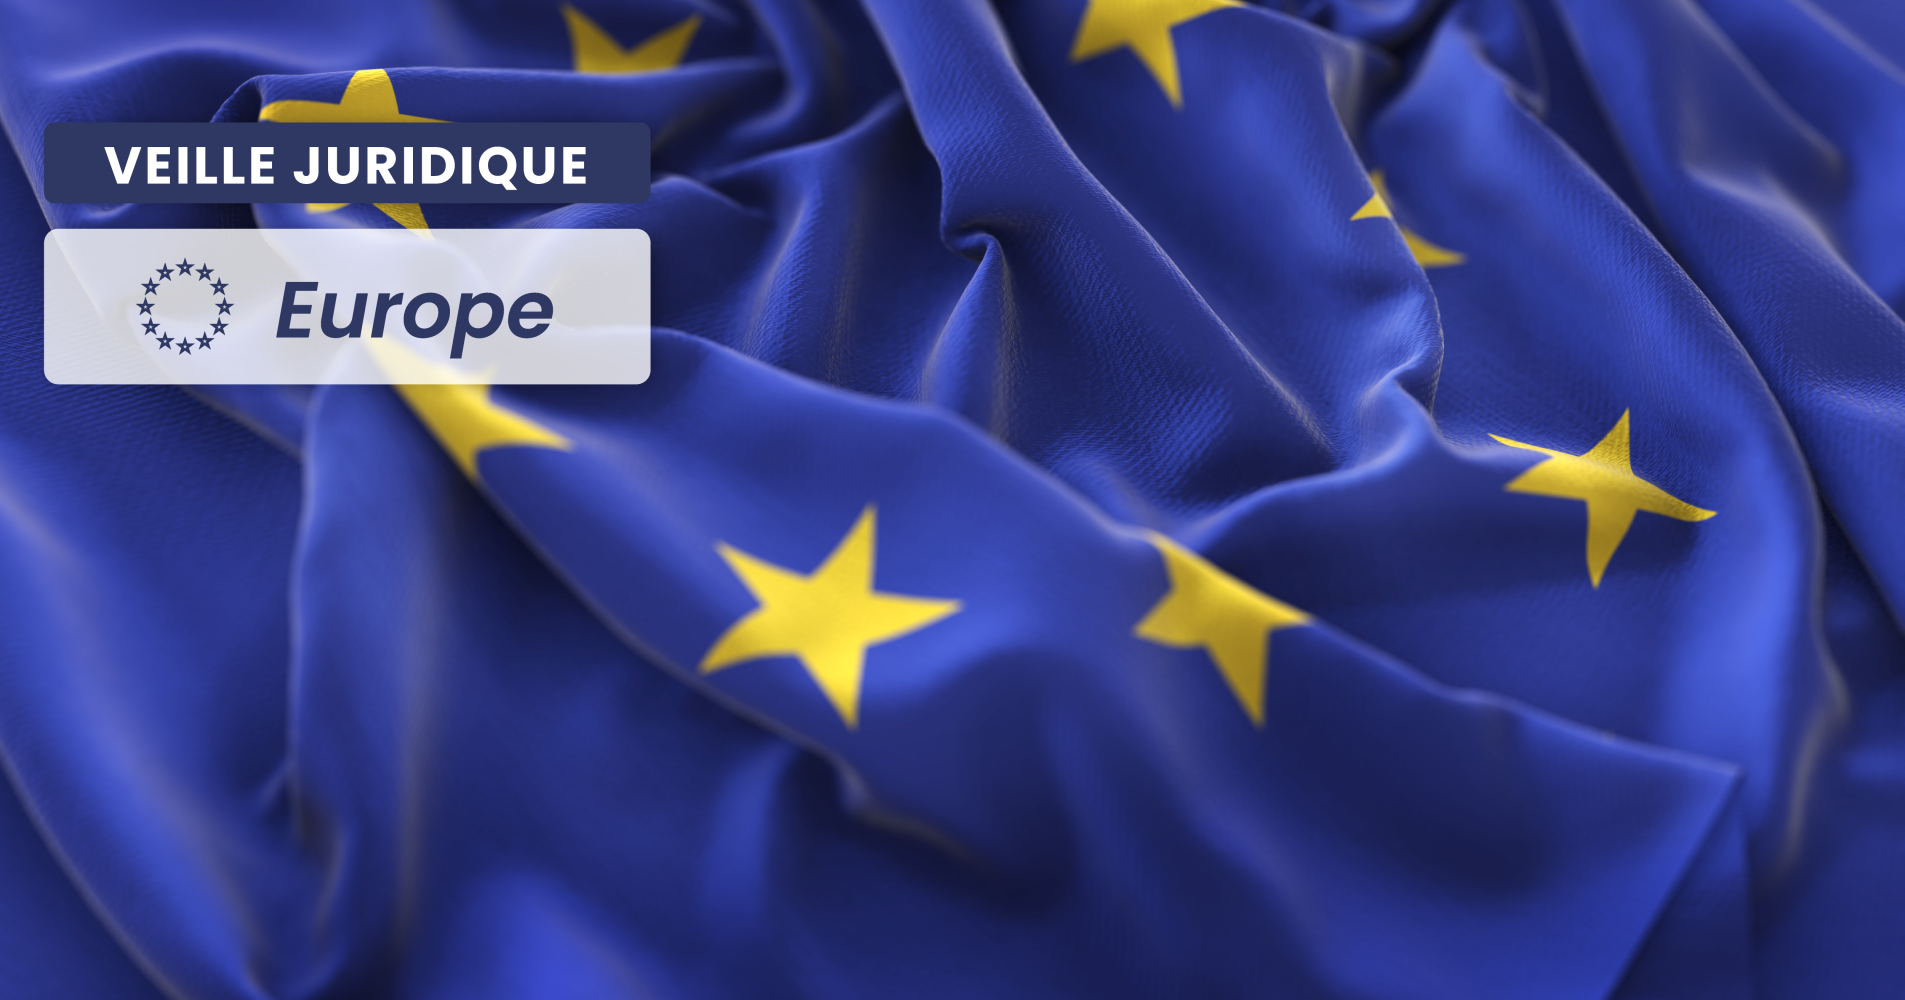 EUROPÉEN – Inapplication de la règle de la concentration des moyens à l’autorité de la chose jugée en France d’une décision étrangère